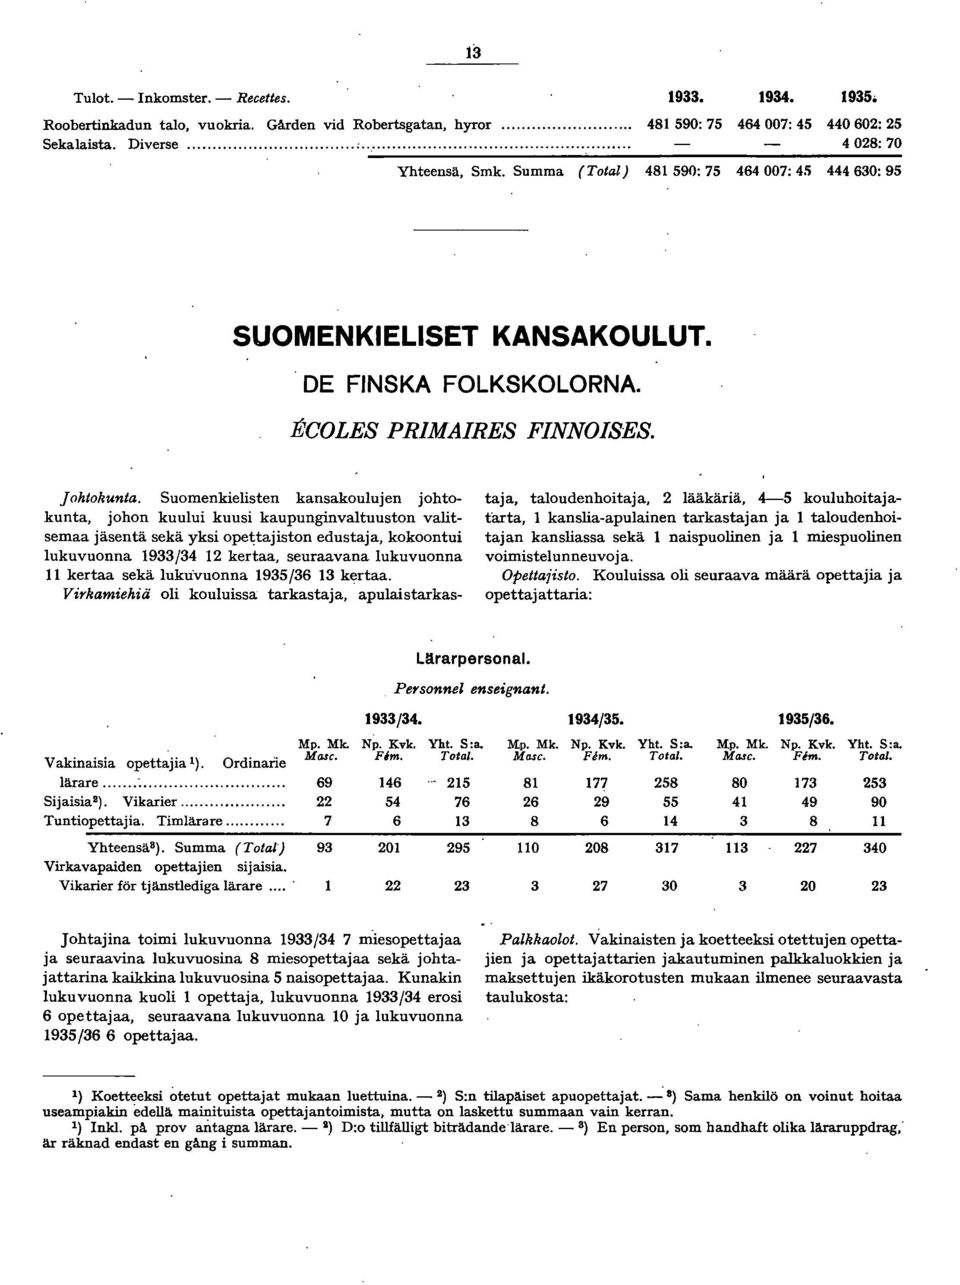 Suomenkielisten kansakoulujen johtokunta, johon kuului kuusi kaupunginvaltuuston valitsemaa jäsentä sekä yksi opetajiston edustaja, kokoontui lukuvuonna 9/ kertaa, seuraavana lukuvuonna kertaa sekä